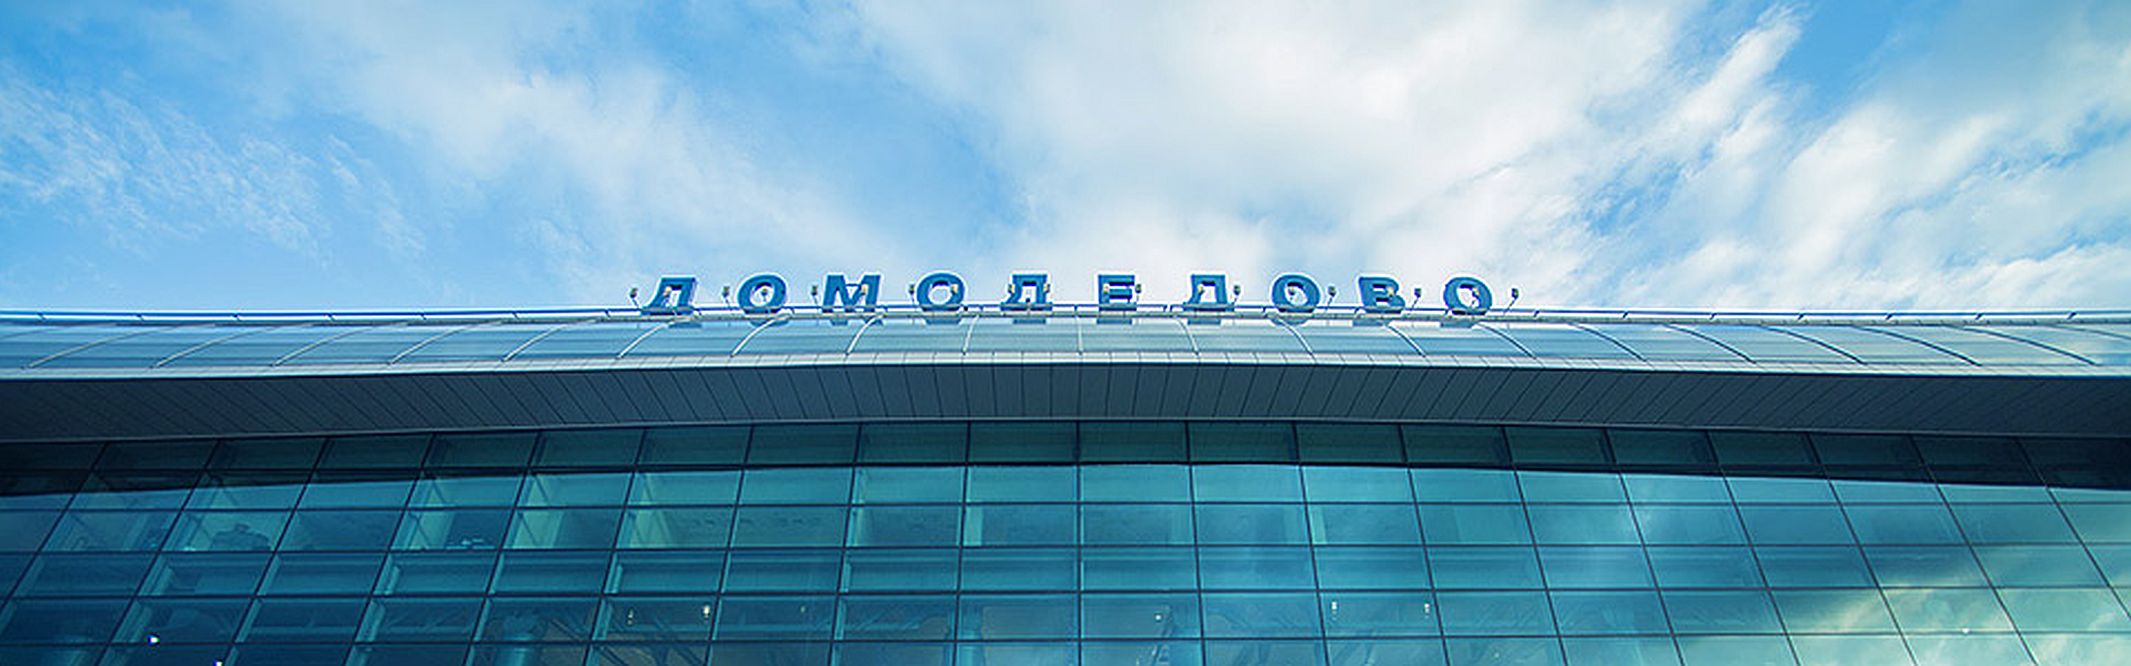 Росавиация запросила 11,4 млрд рублей на достройку инфраструктуры в "Домодедово"